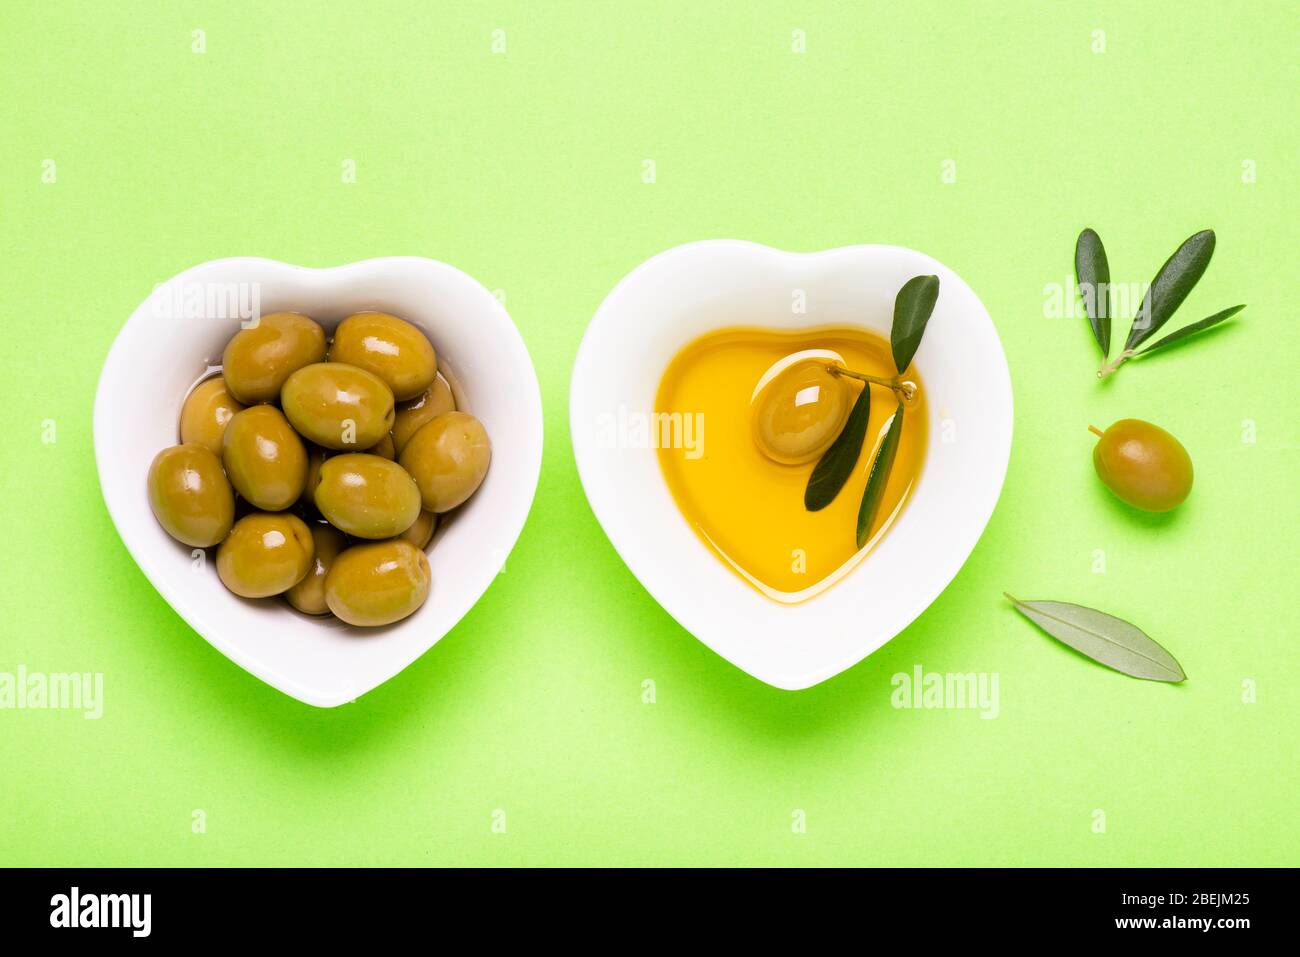 vue de dessus, sur fond vert uniforme, deux bols en céramique blanche en forme de coeur aux olives et à l'huile d'olive extra vierge Banque D'Images